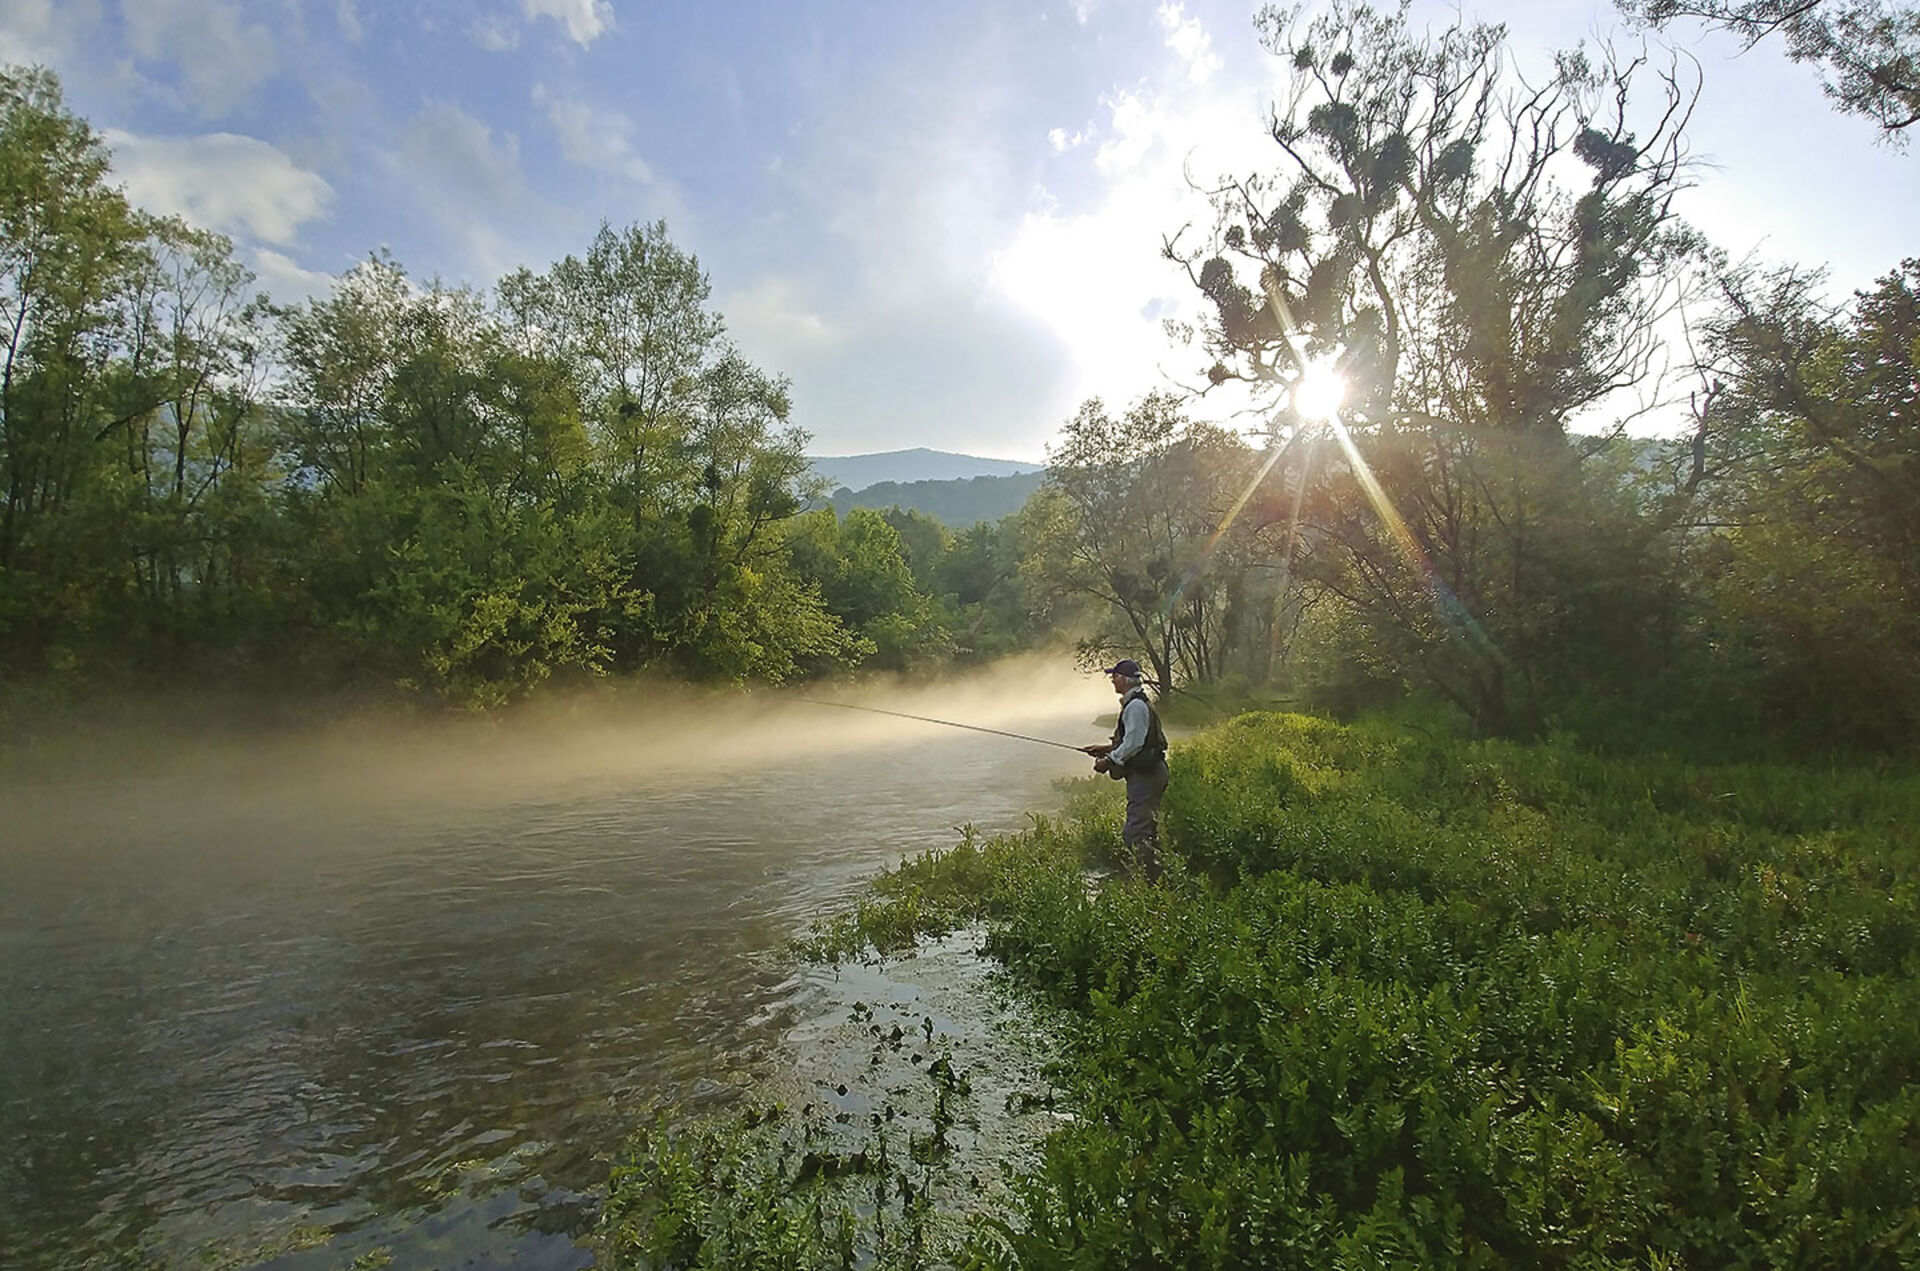  Die meisten Flüsse im nördlichen Bosnien sind gut zugänglich und ermöglichen dem Fliegenfischer unvergessliche Naturerlebnisse.  